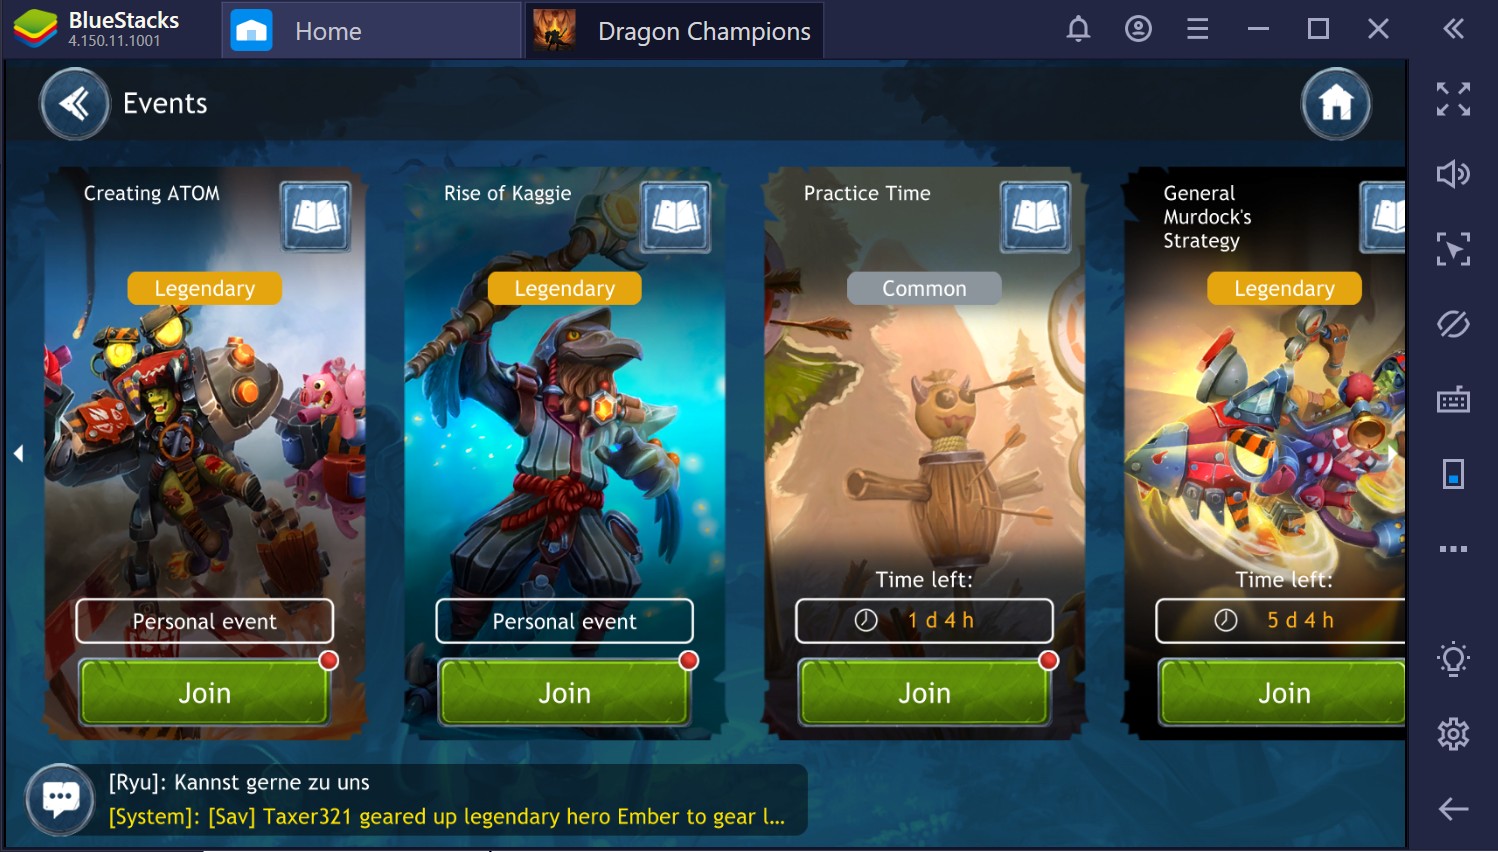 Dragon Champions: dicas e truques para evoluir rapidamente